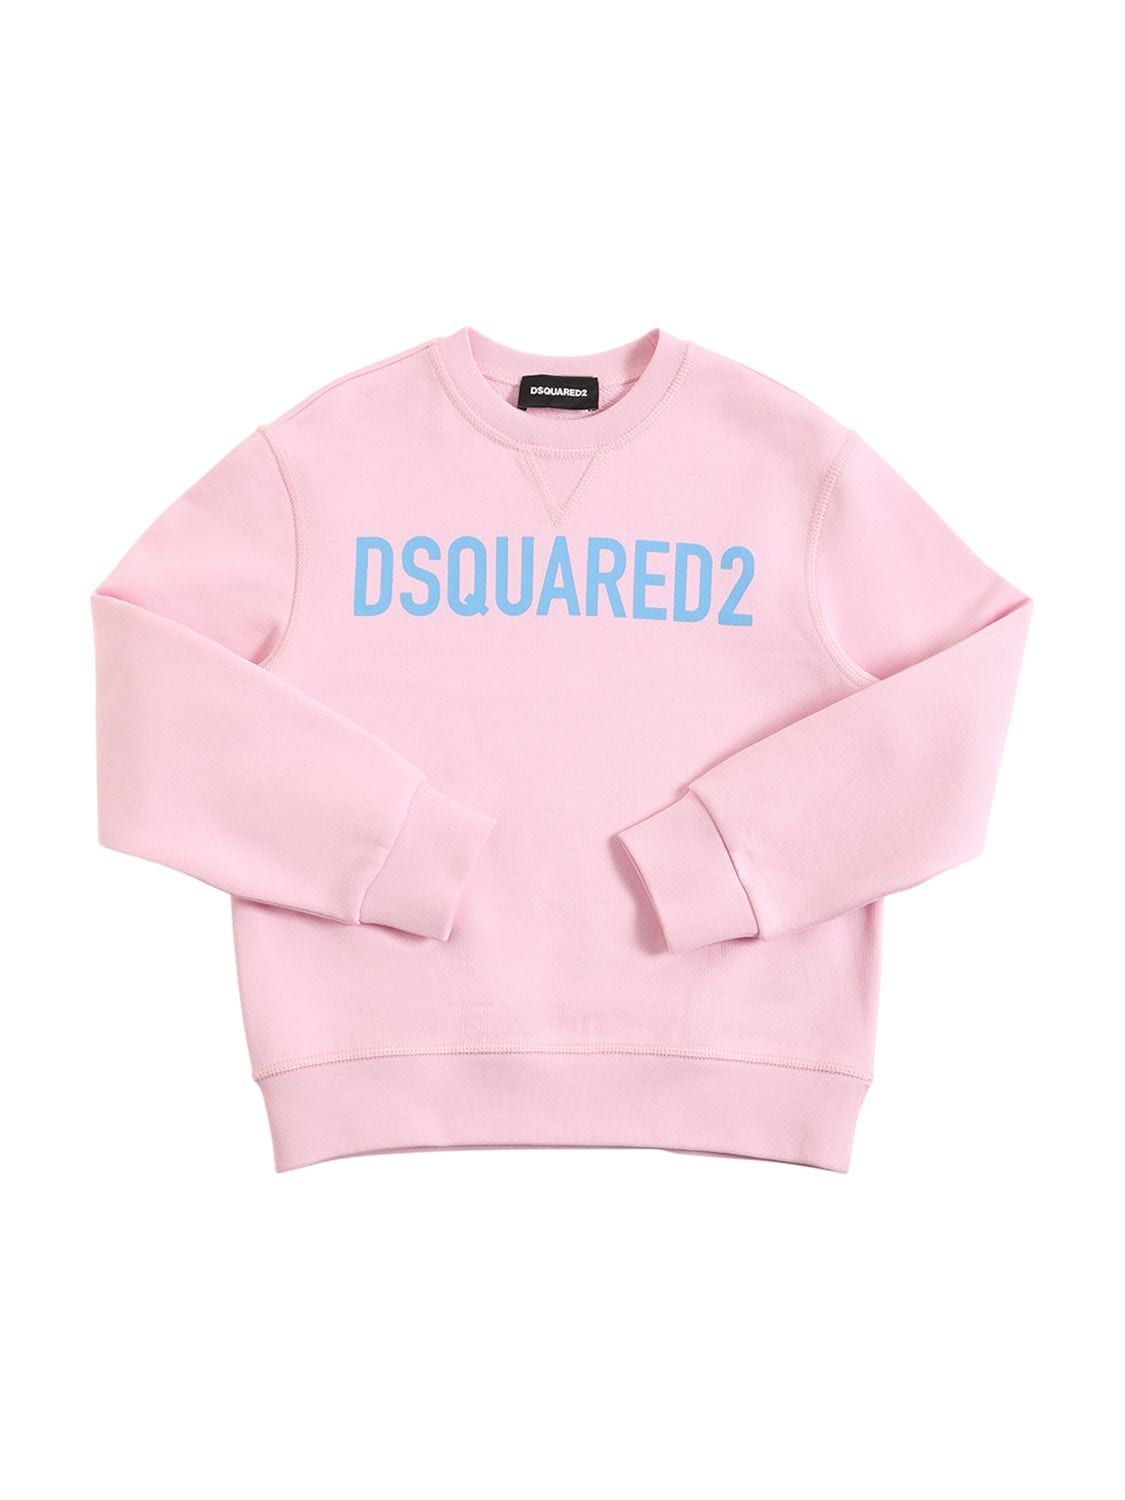 Dsquared2 Kids' Logo Printed Cotton Sweatshirt In Pink